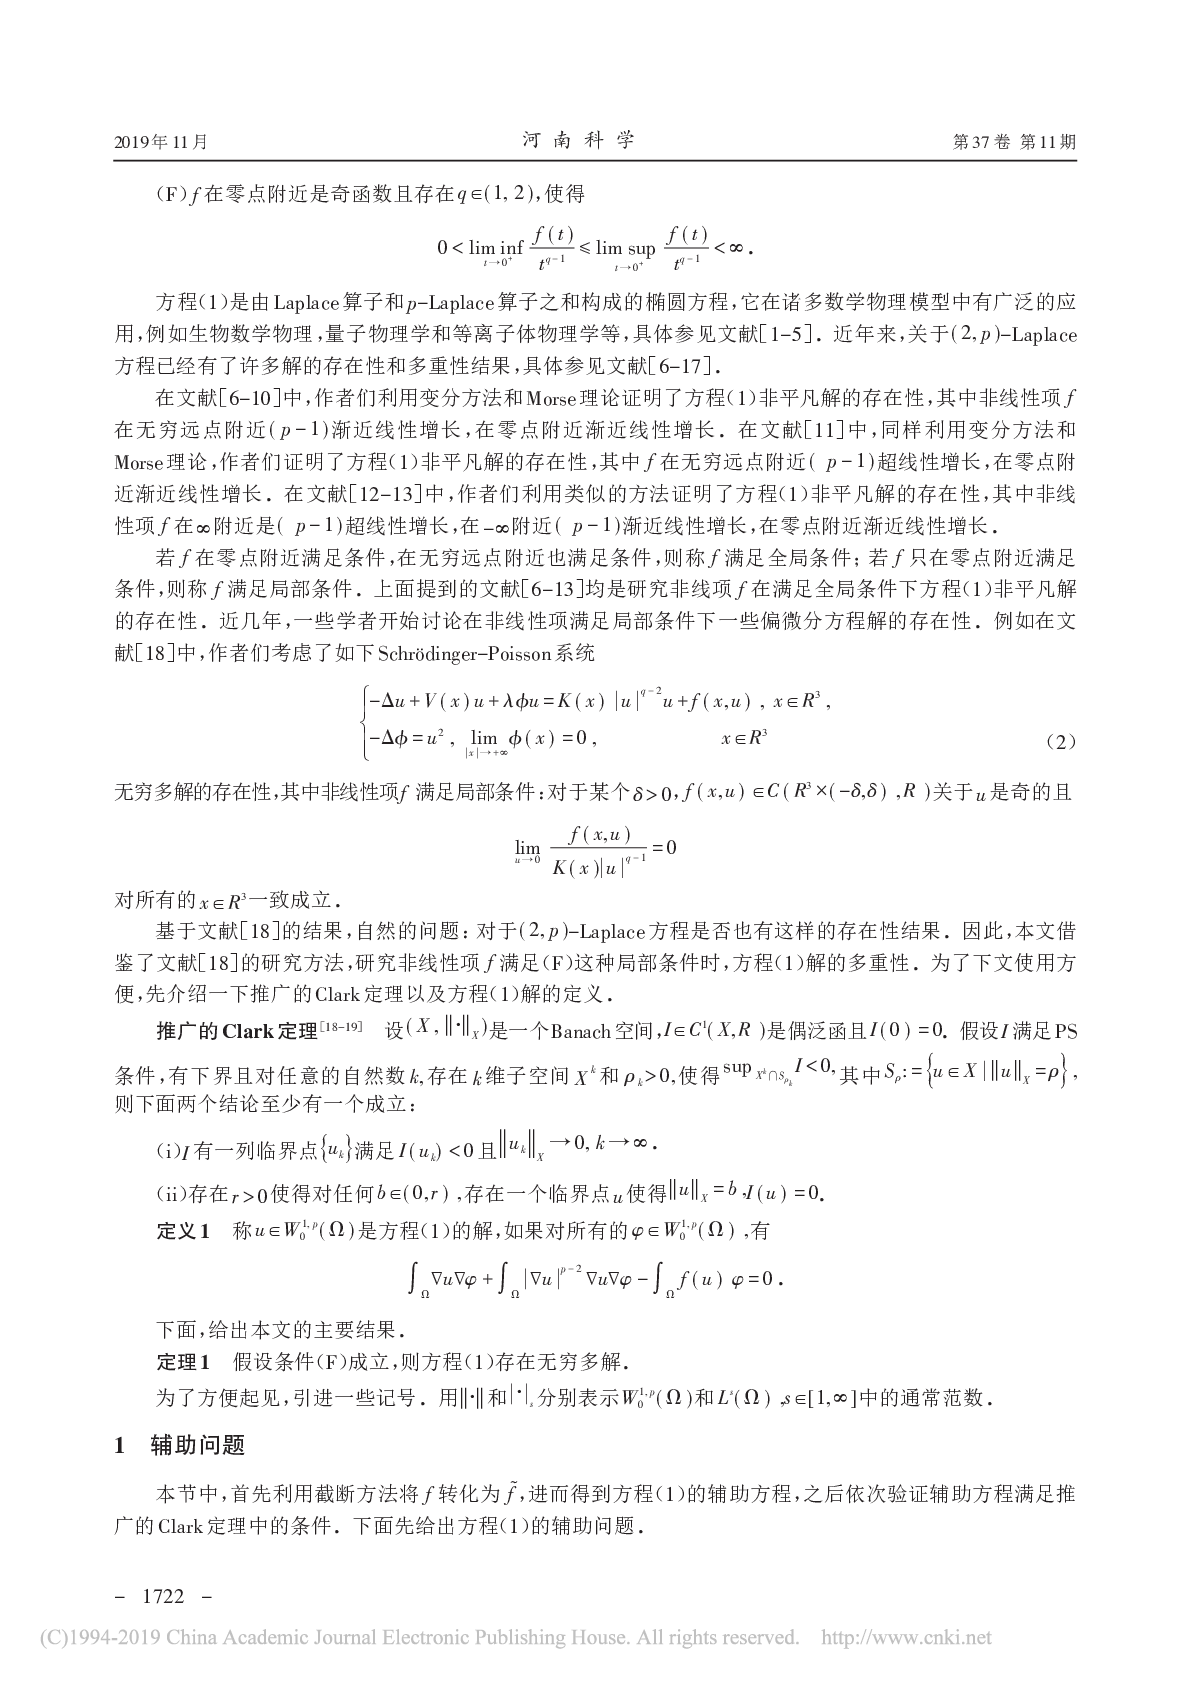 满足局部条件(2,p)-Laplace方程解的多重性